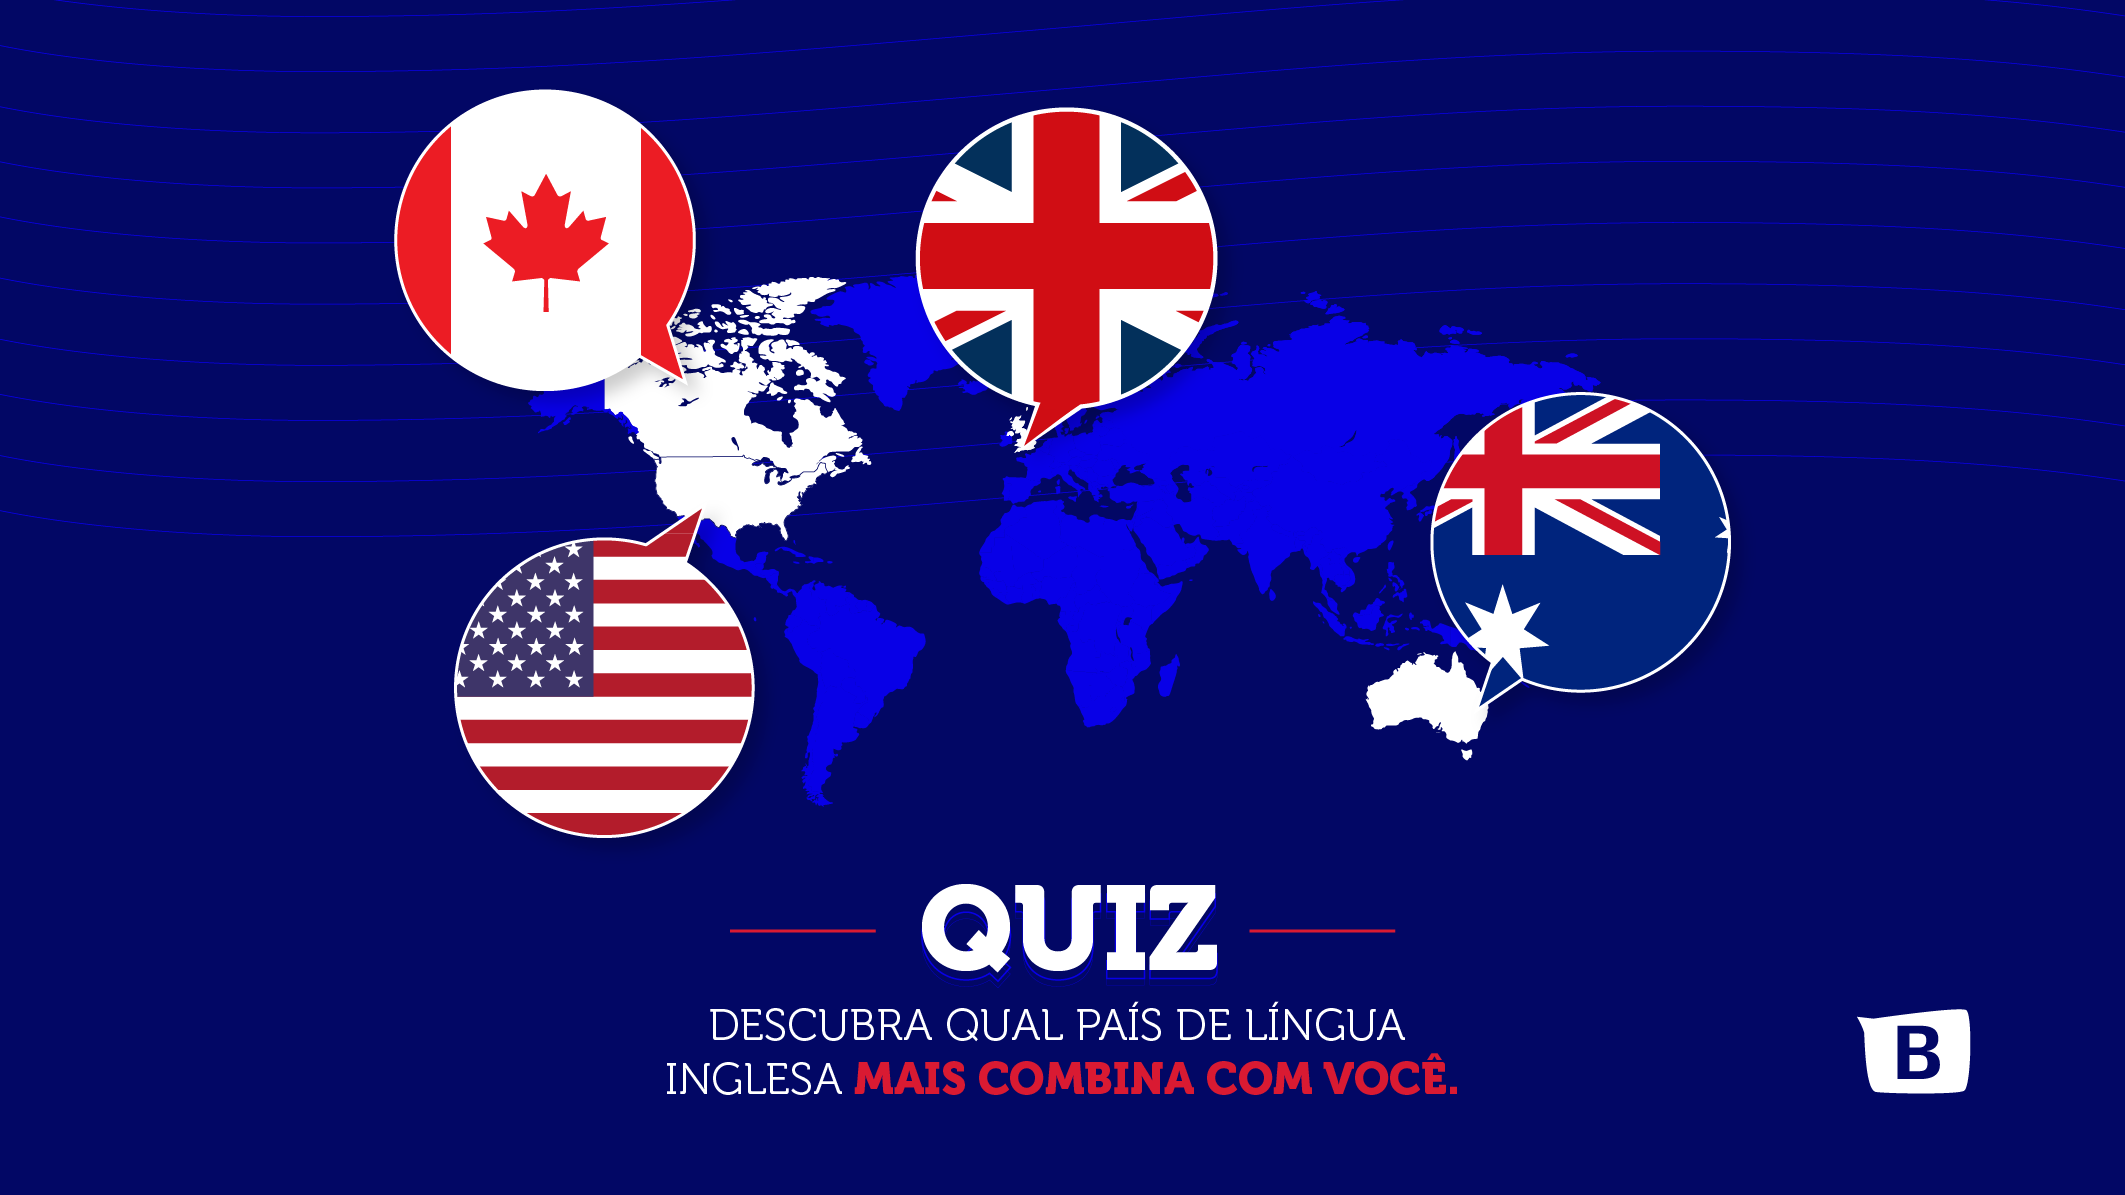 Descubra qual país de língua inglesa mais combina com você. 3